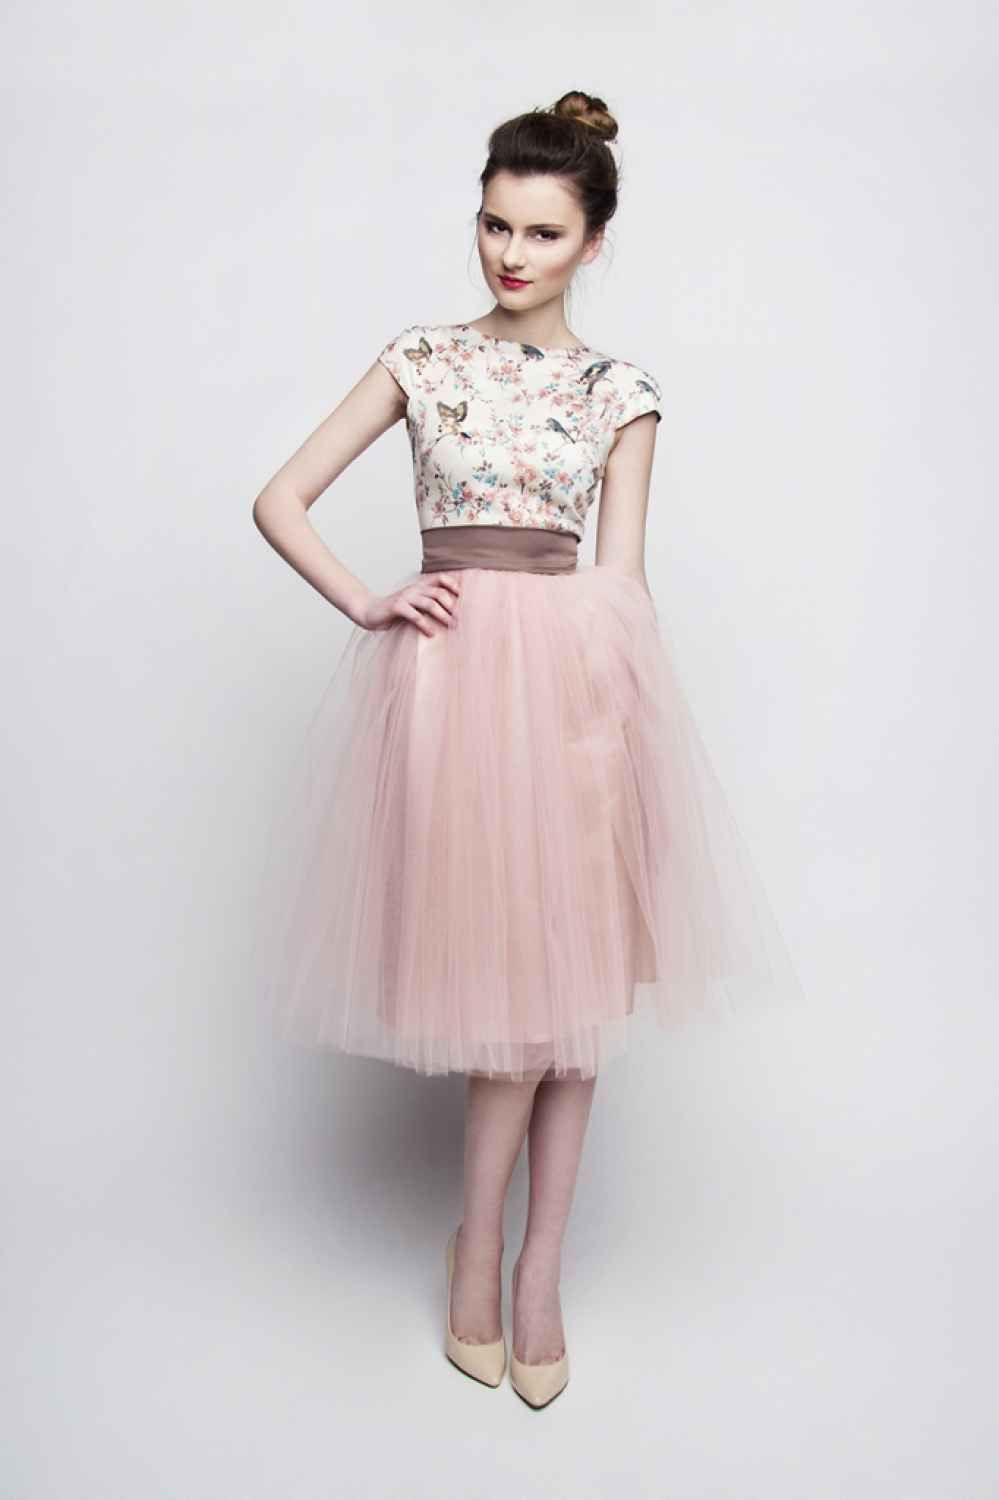 Vintage Kleid Hochzeit
 Standesamt Kleid rosa braun kurz mit Tüllrock individuelle